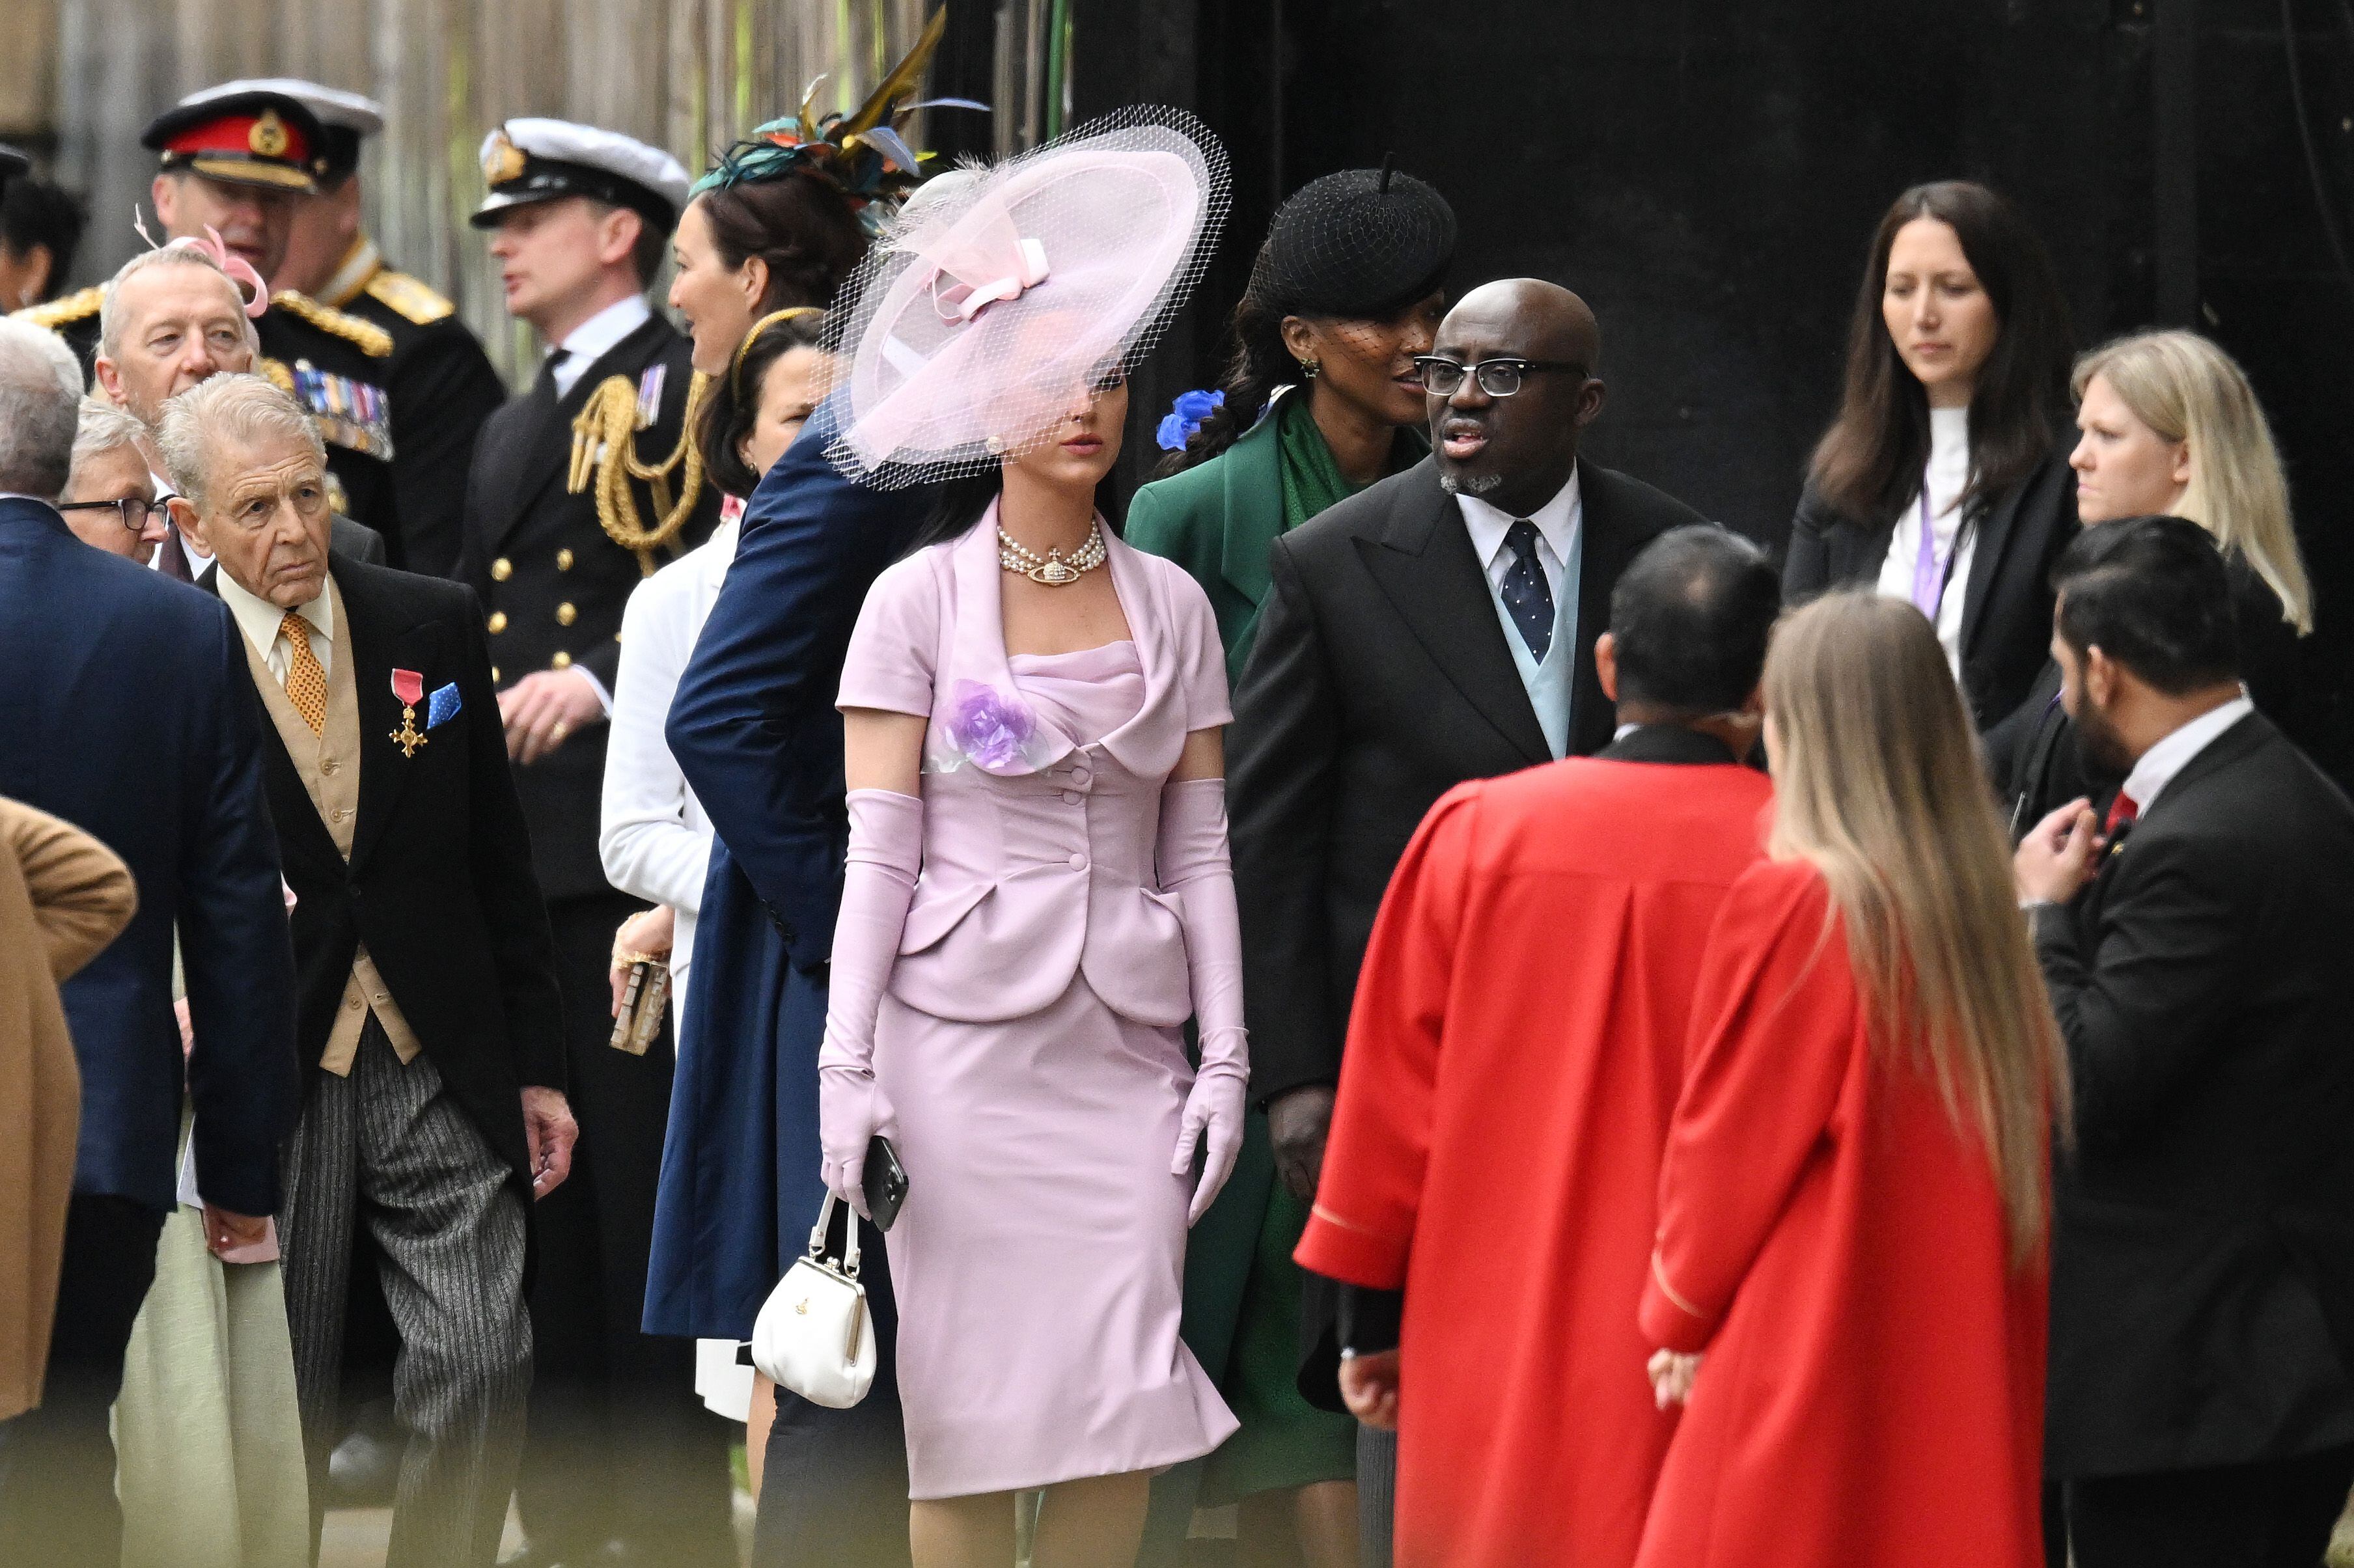 La cantante Katy Perry, que participará en el concierto que tendrá lugar el domingo frente al castillo de Windsor, y Edward Enninful, director de la edición británica de la revista 'Vogue', llegan a la abadía de Westminster. 